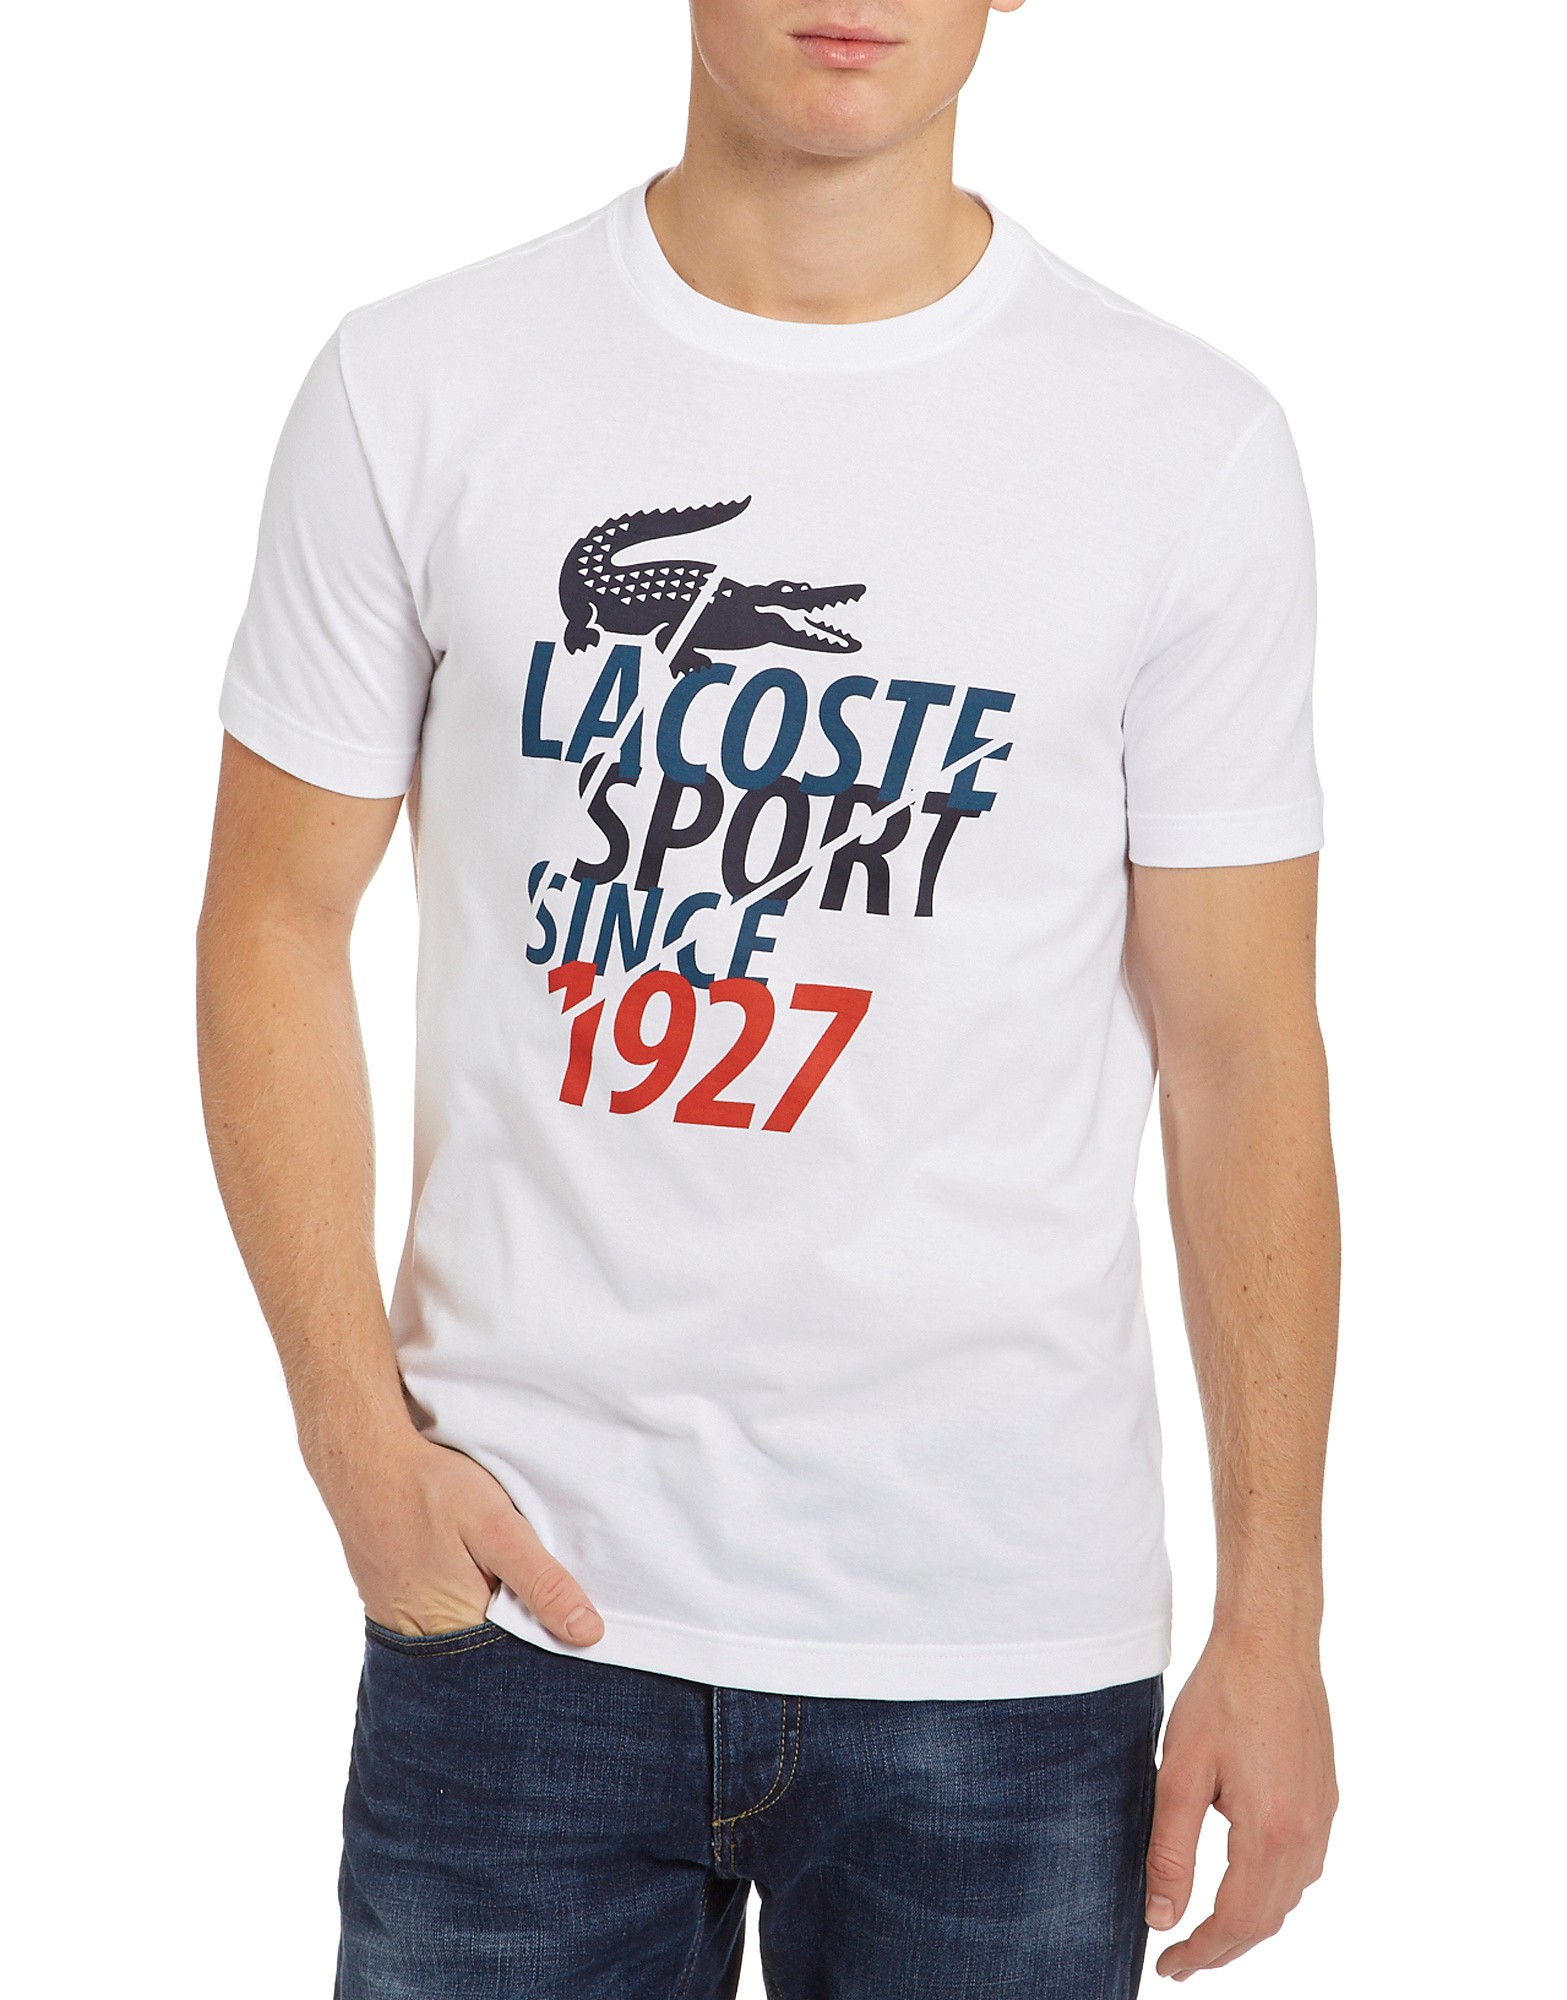 Lacoste Croc Text T-Shirt